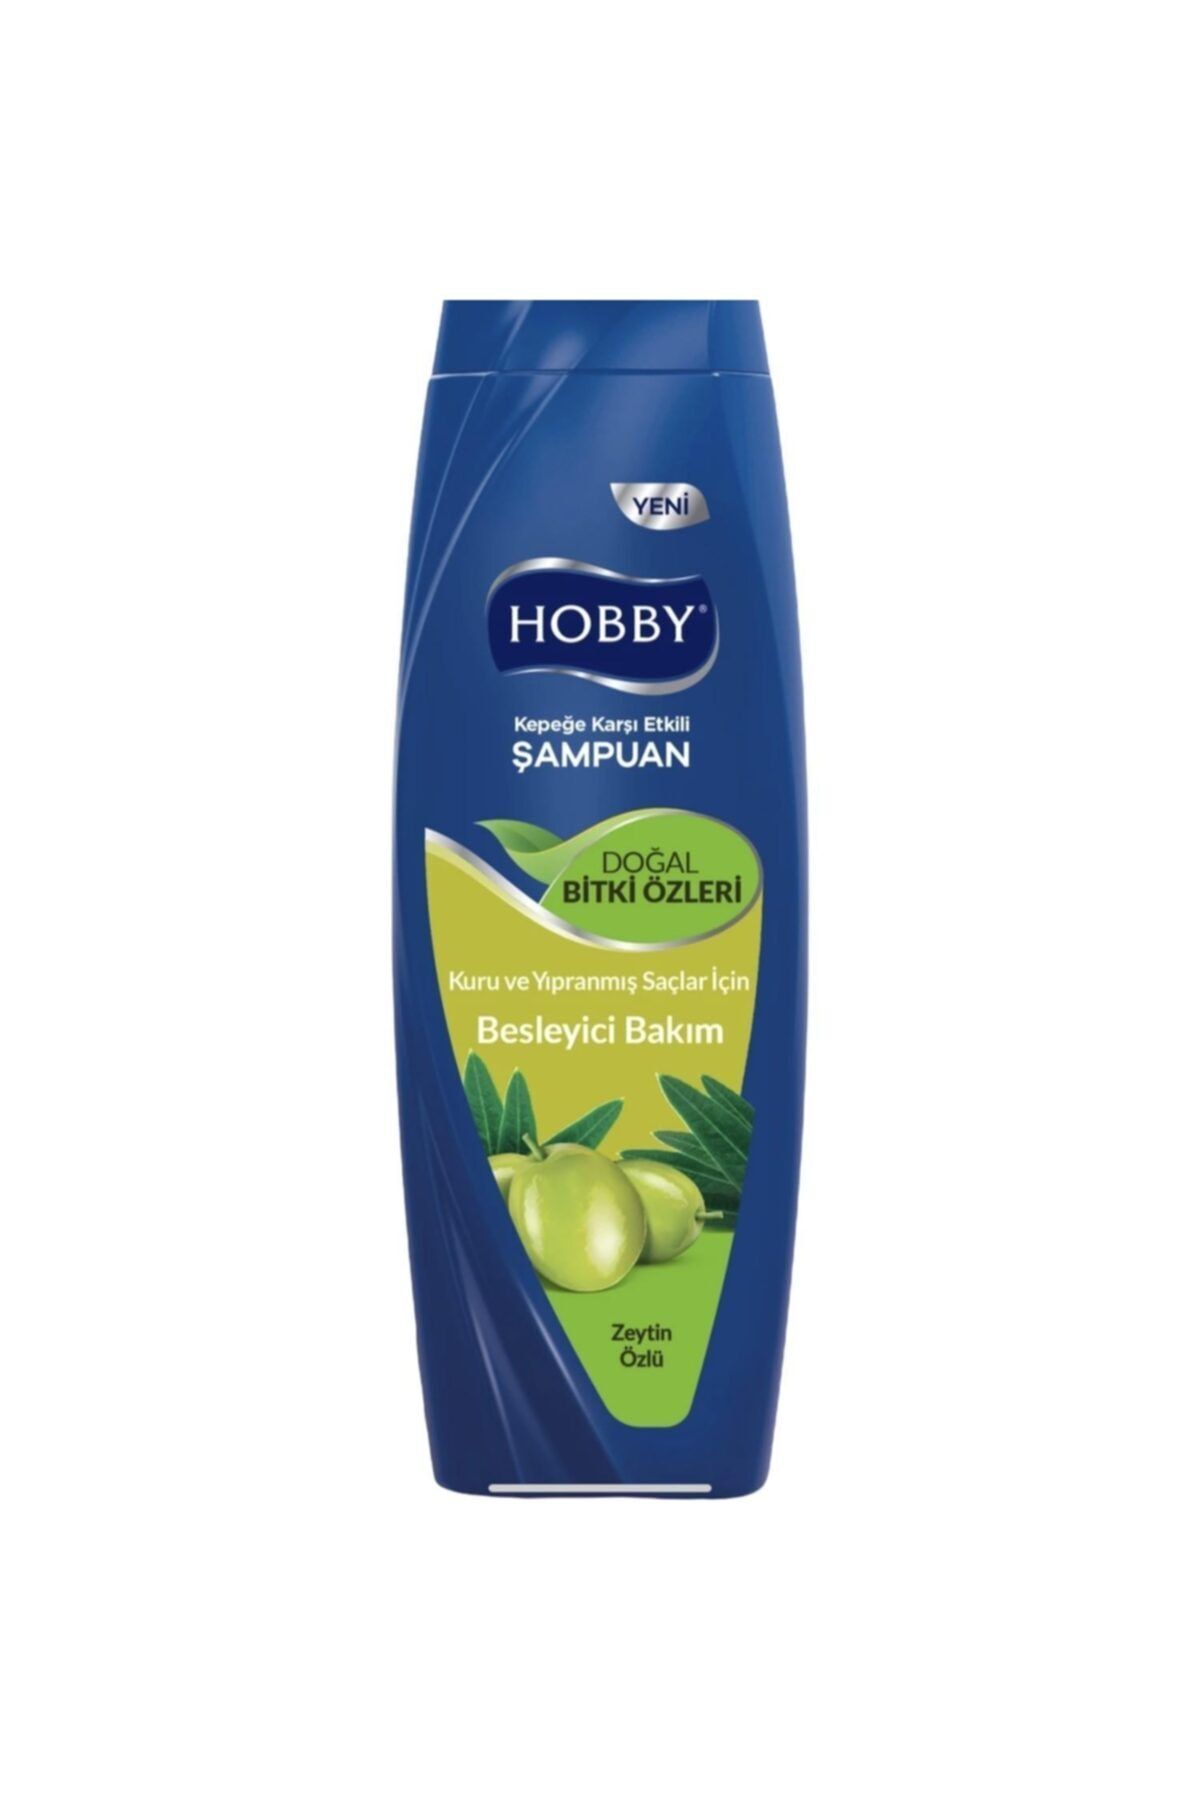 Hobby Doğal Bitki Zeytin Özlü Kepeğe Karşı Etkili Şampuan 600 ml